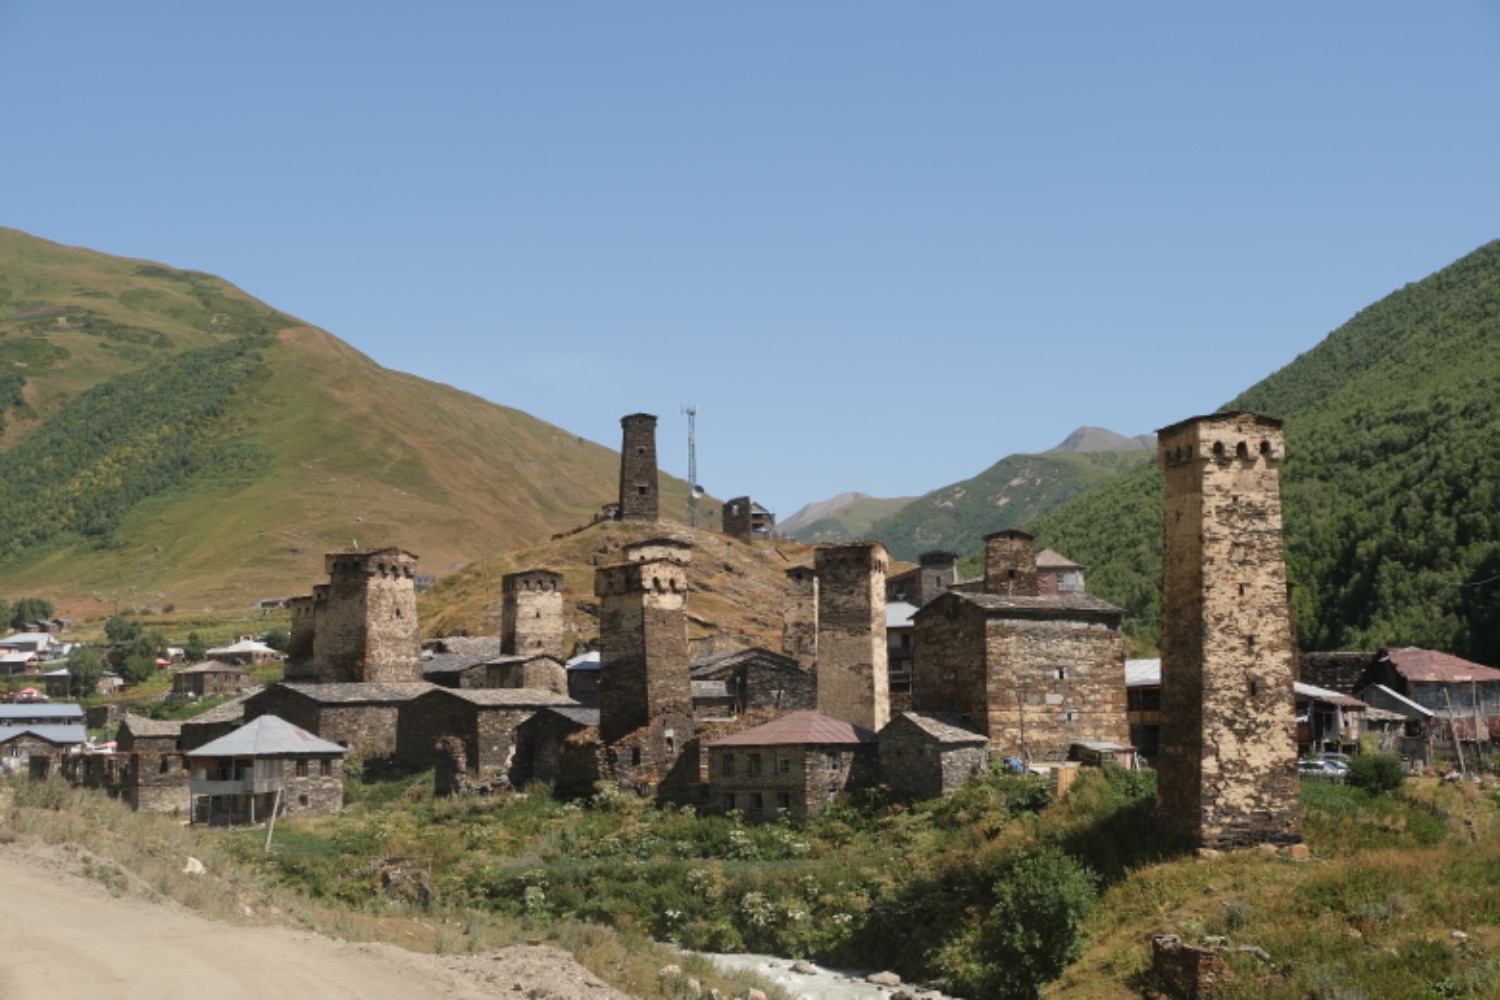 Svan towers of Ushguli